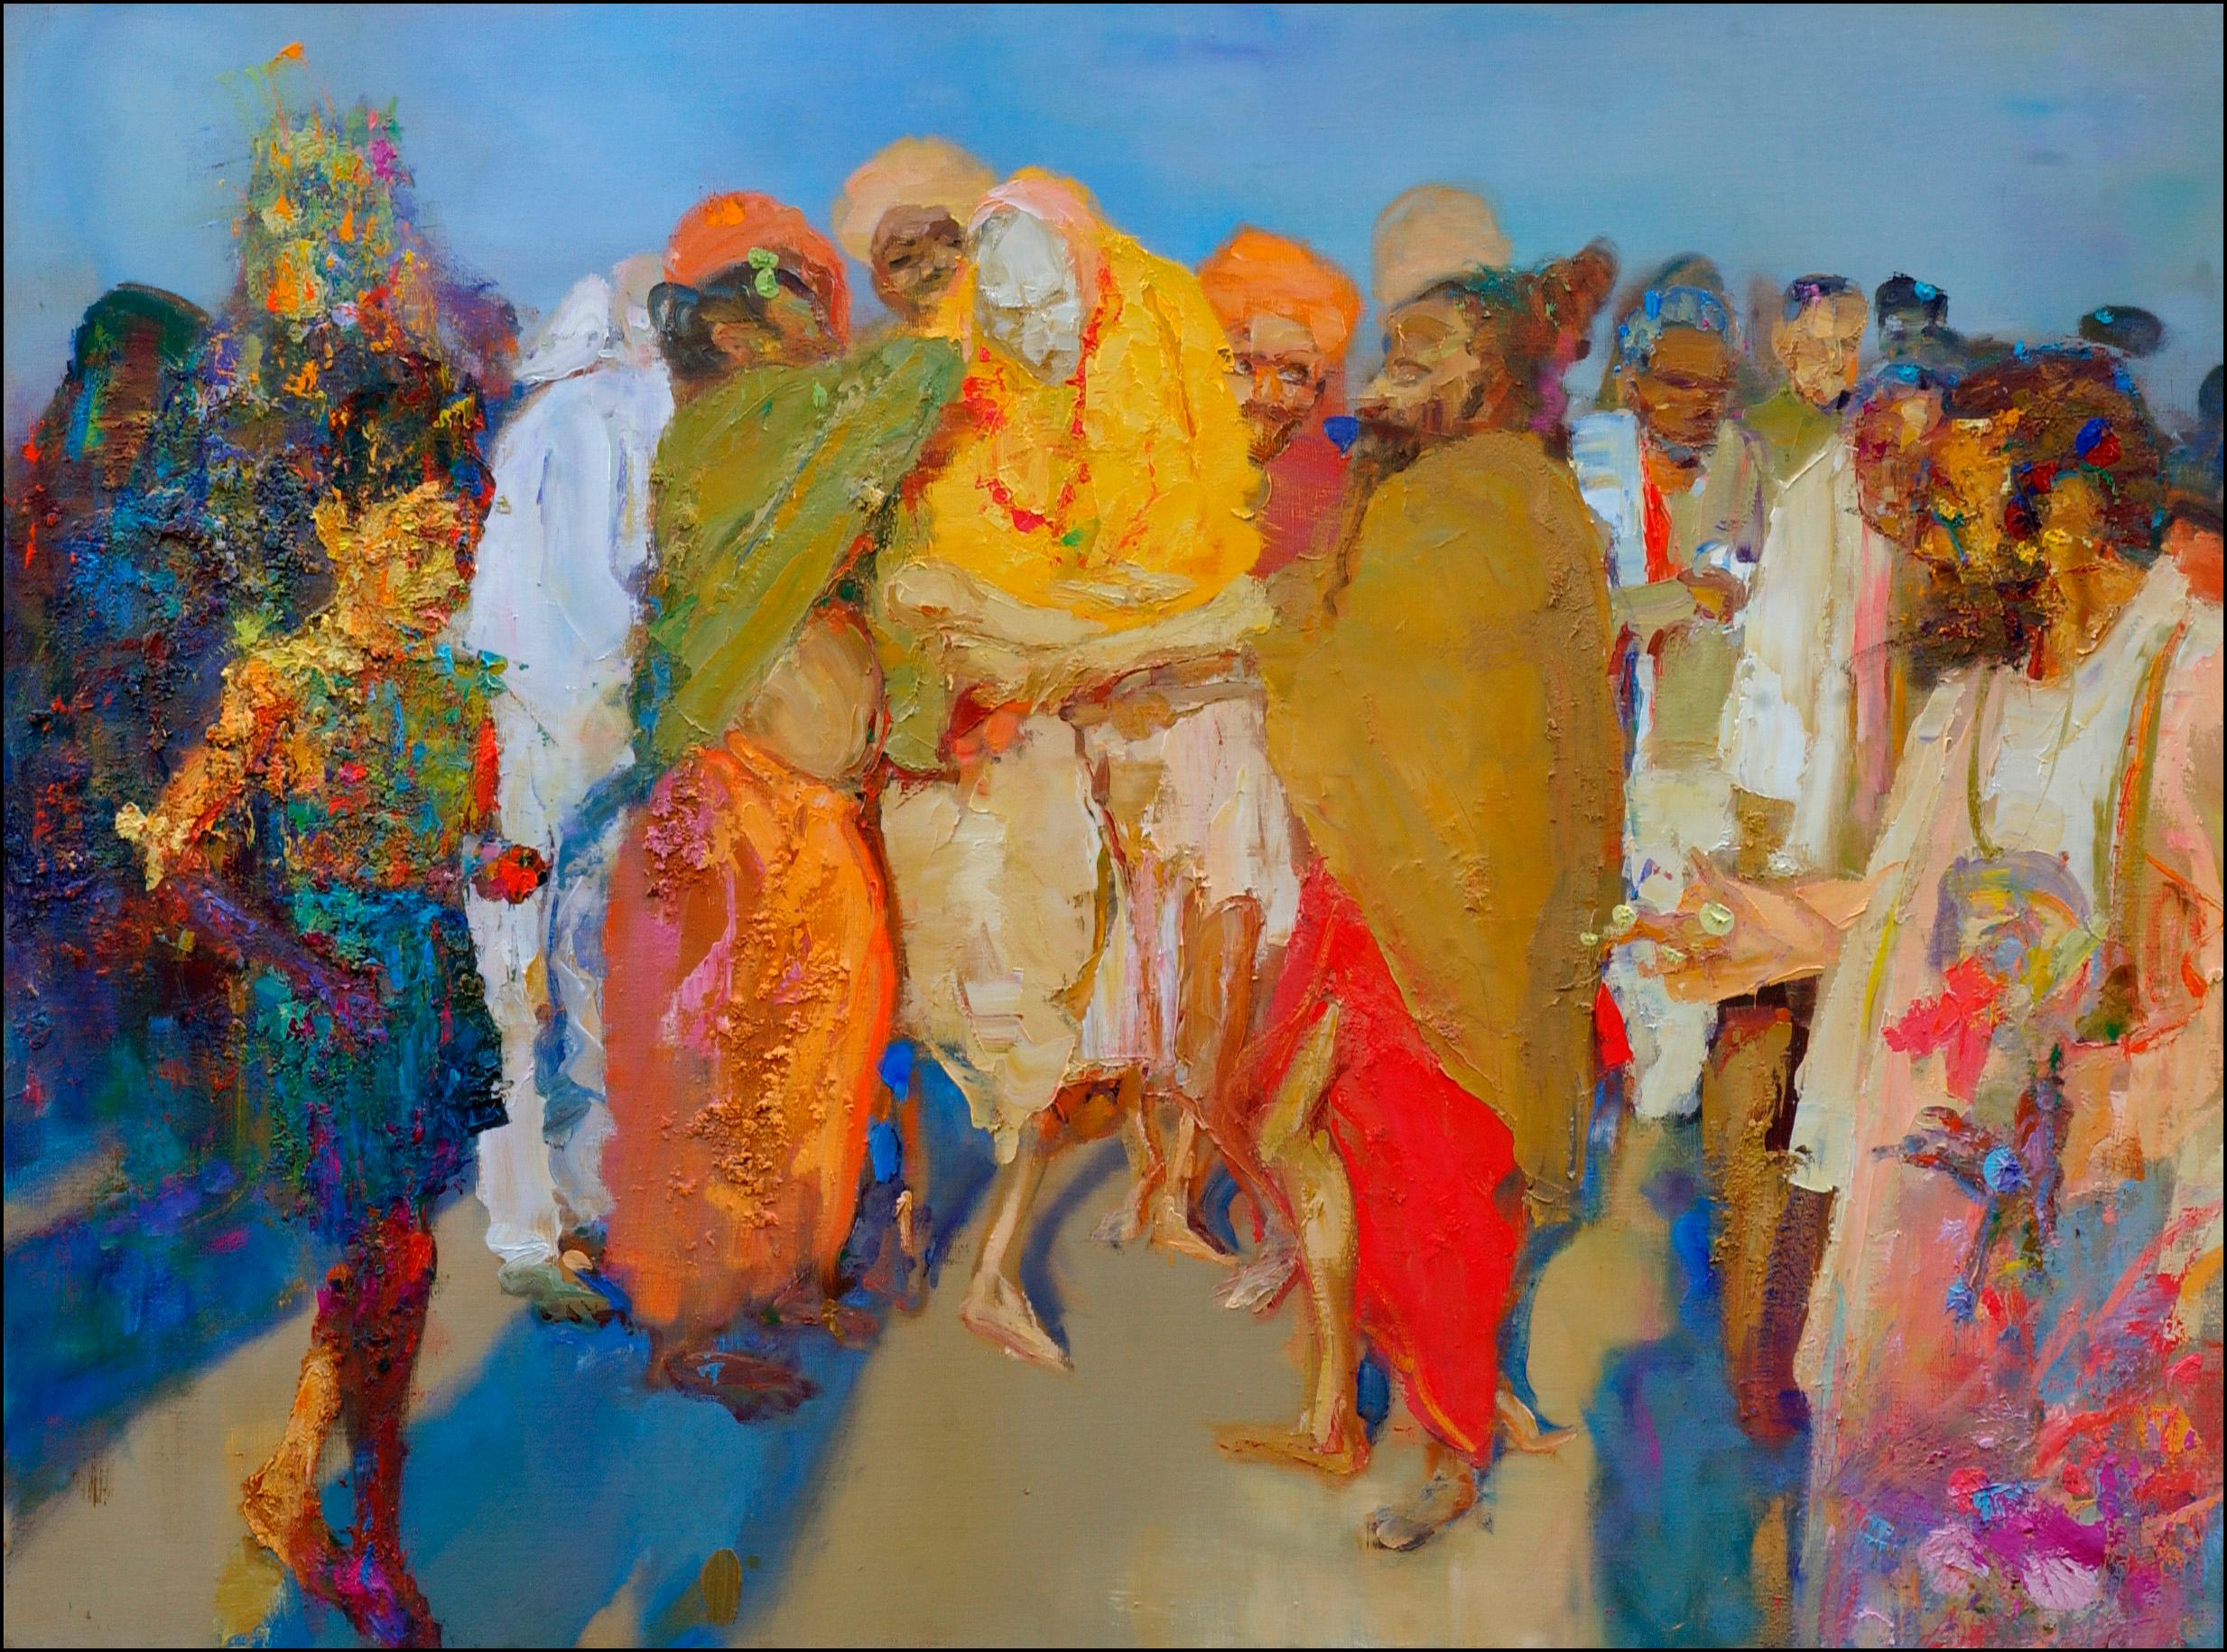 Aïeul d'Inde (2000) des französischen zeitgenössischen Künstlers Christophe Dupety. Öl auf Leinwand, H 38,2 x B 51,2 in (97 x 130 cm). Einzigartiges Werk, das ungerahmt mit einem Echtheitszertifikat verkauft wird.
Das Bestreben des Künstlers ist es,